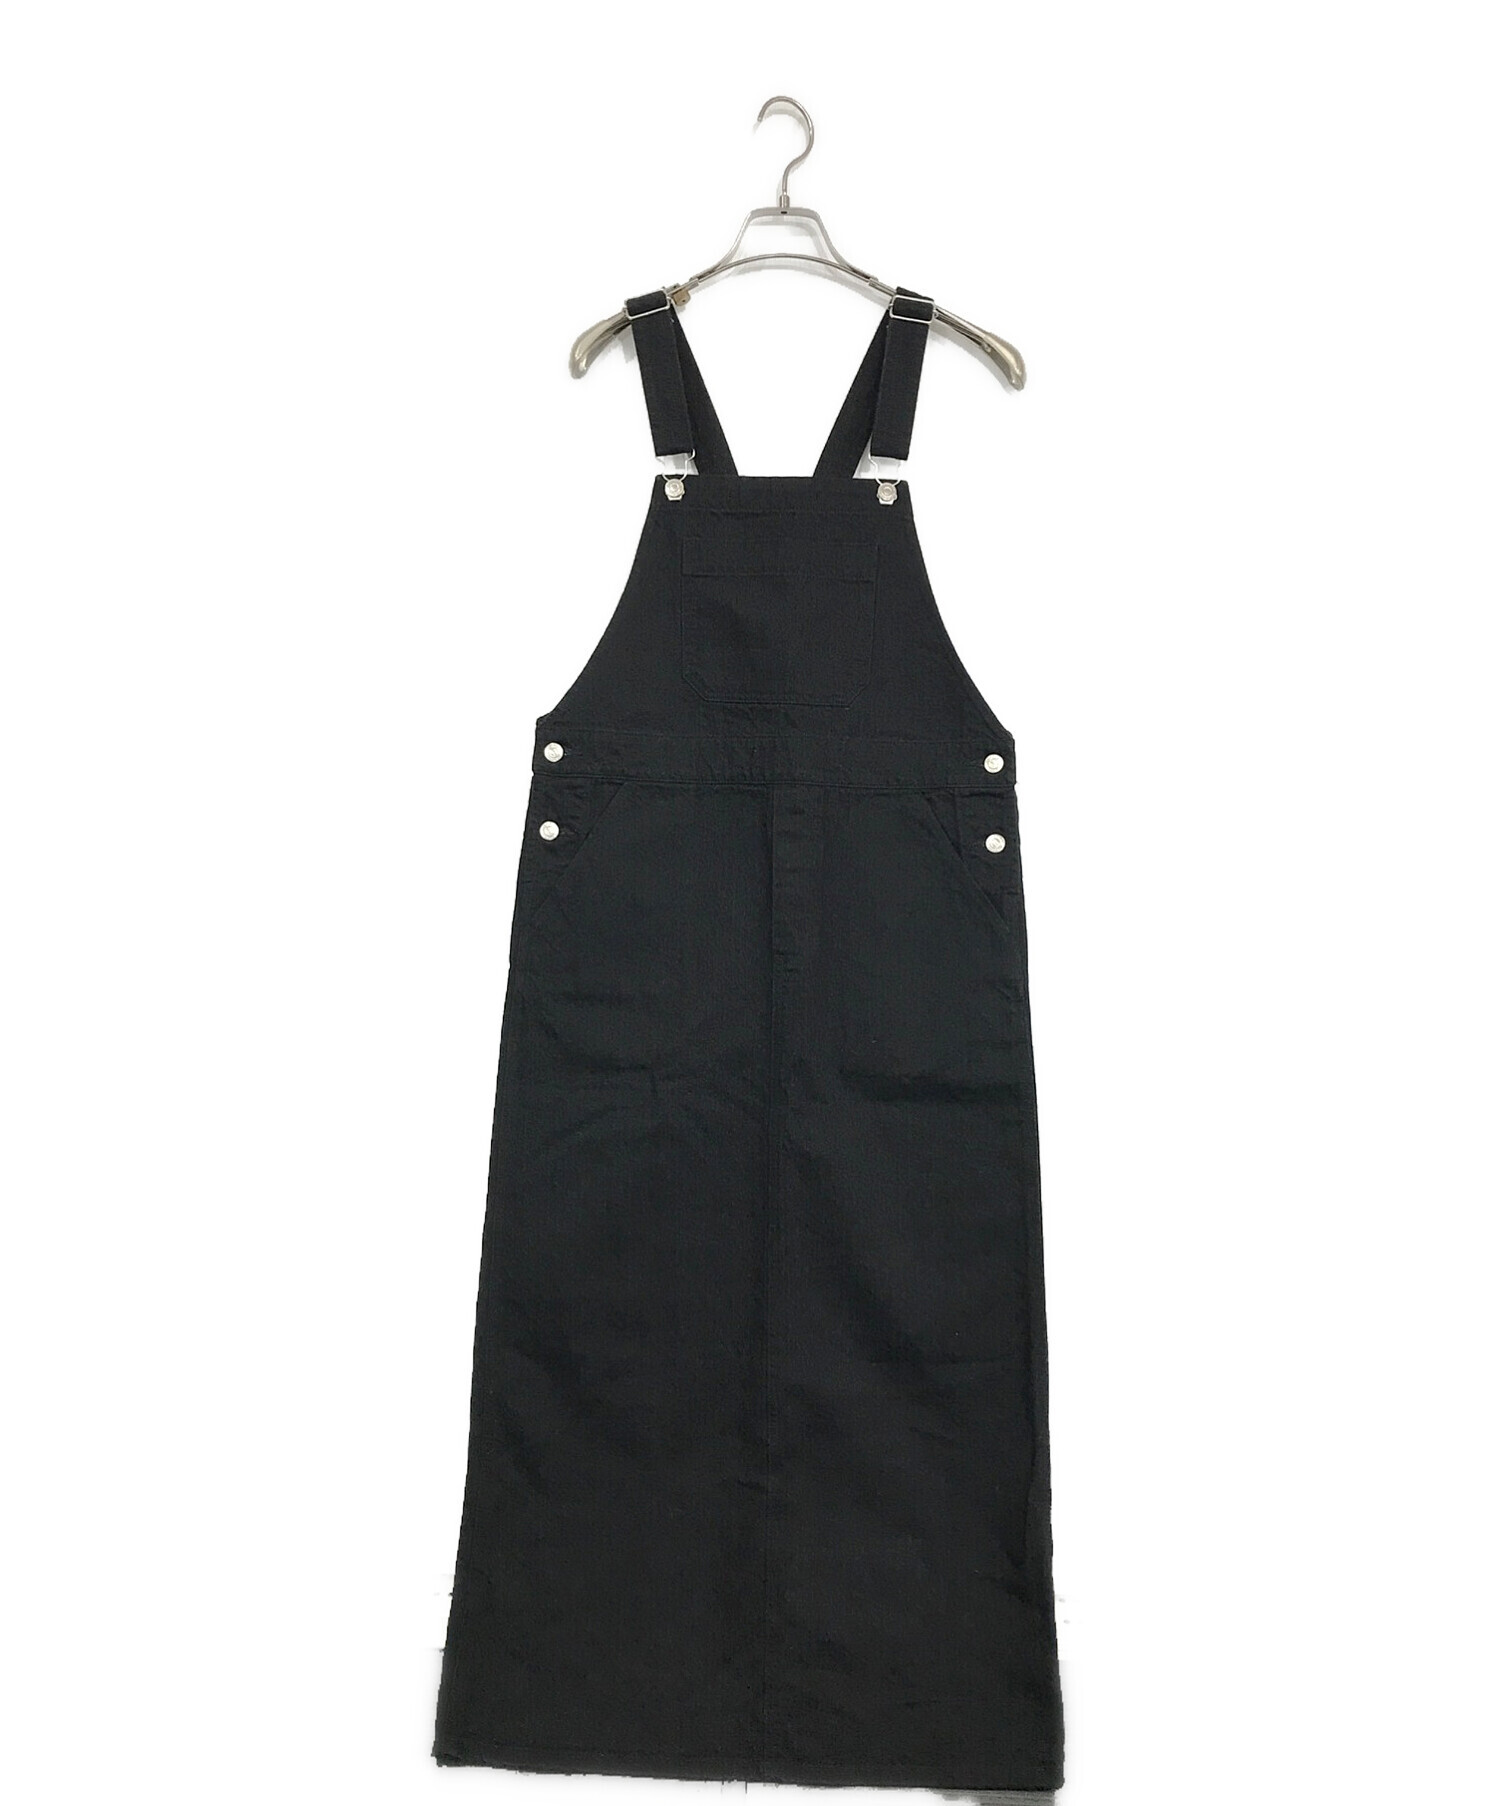 MACPHEE (マカフィー) コットンデニムサロペットスカート ブラック サイズ:SIZE 36